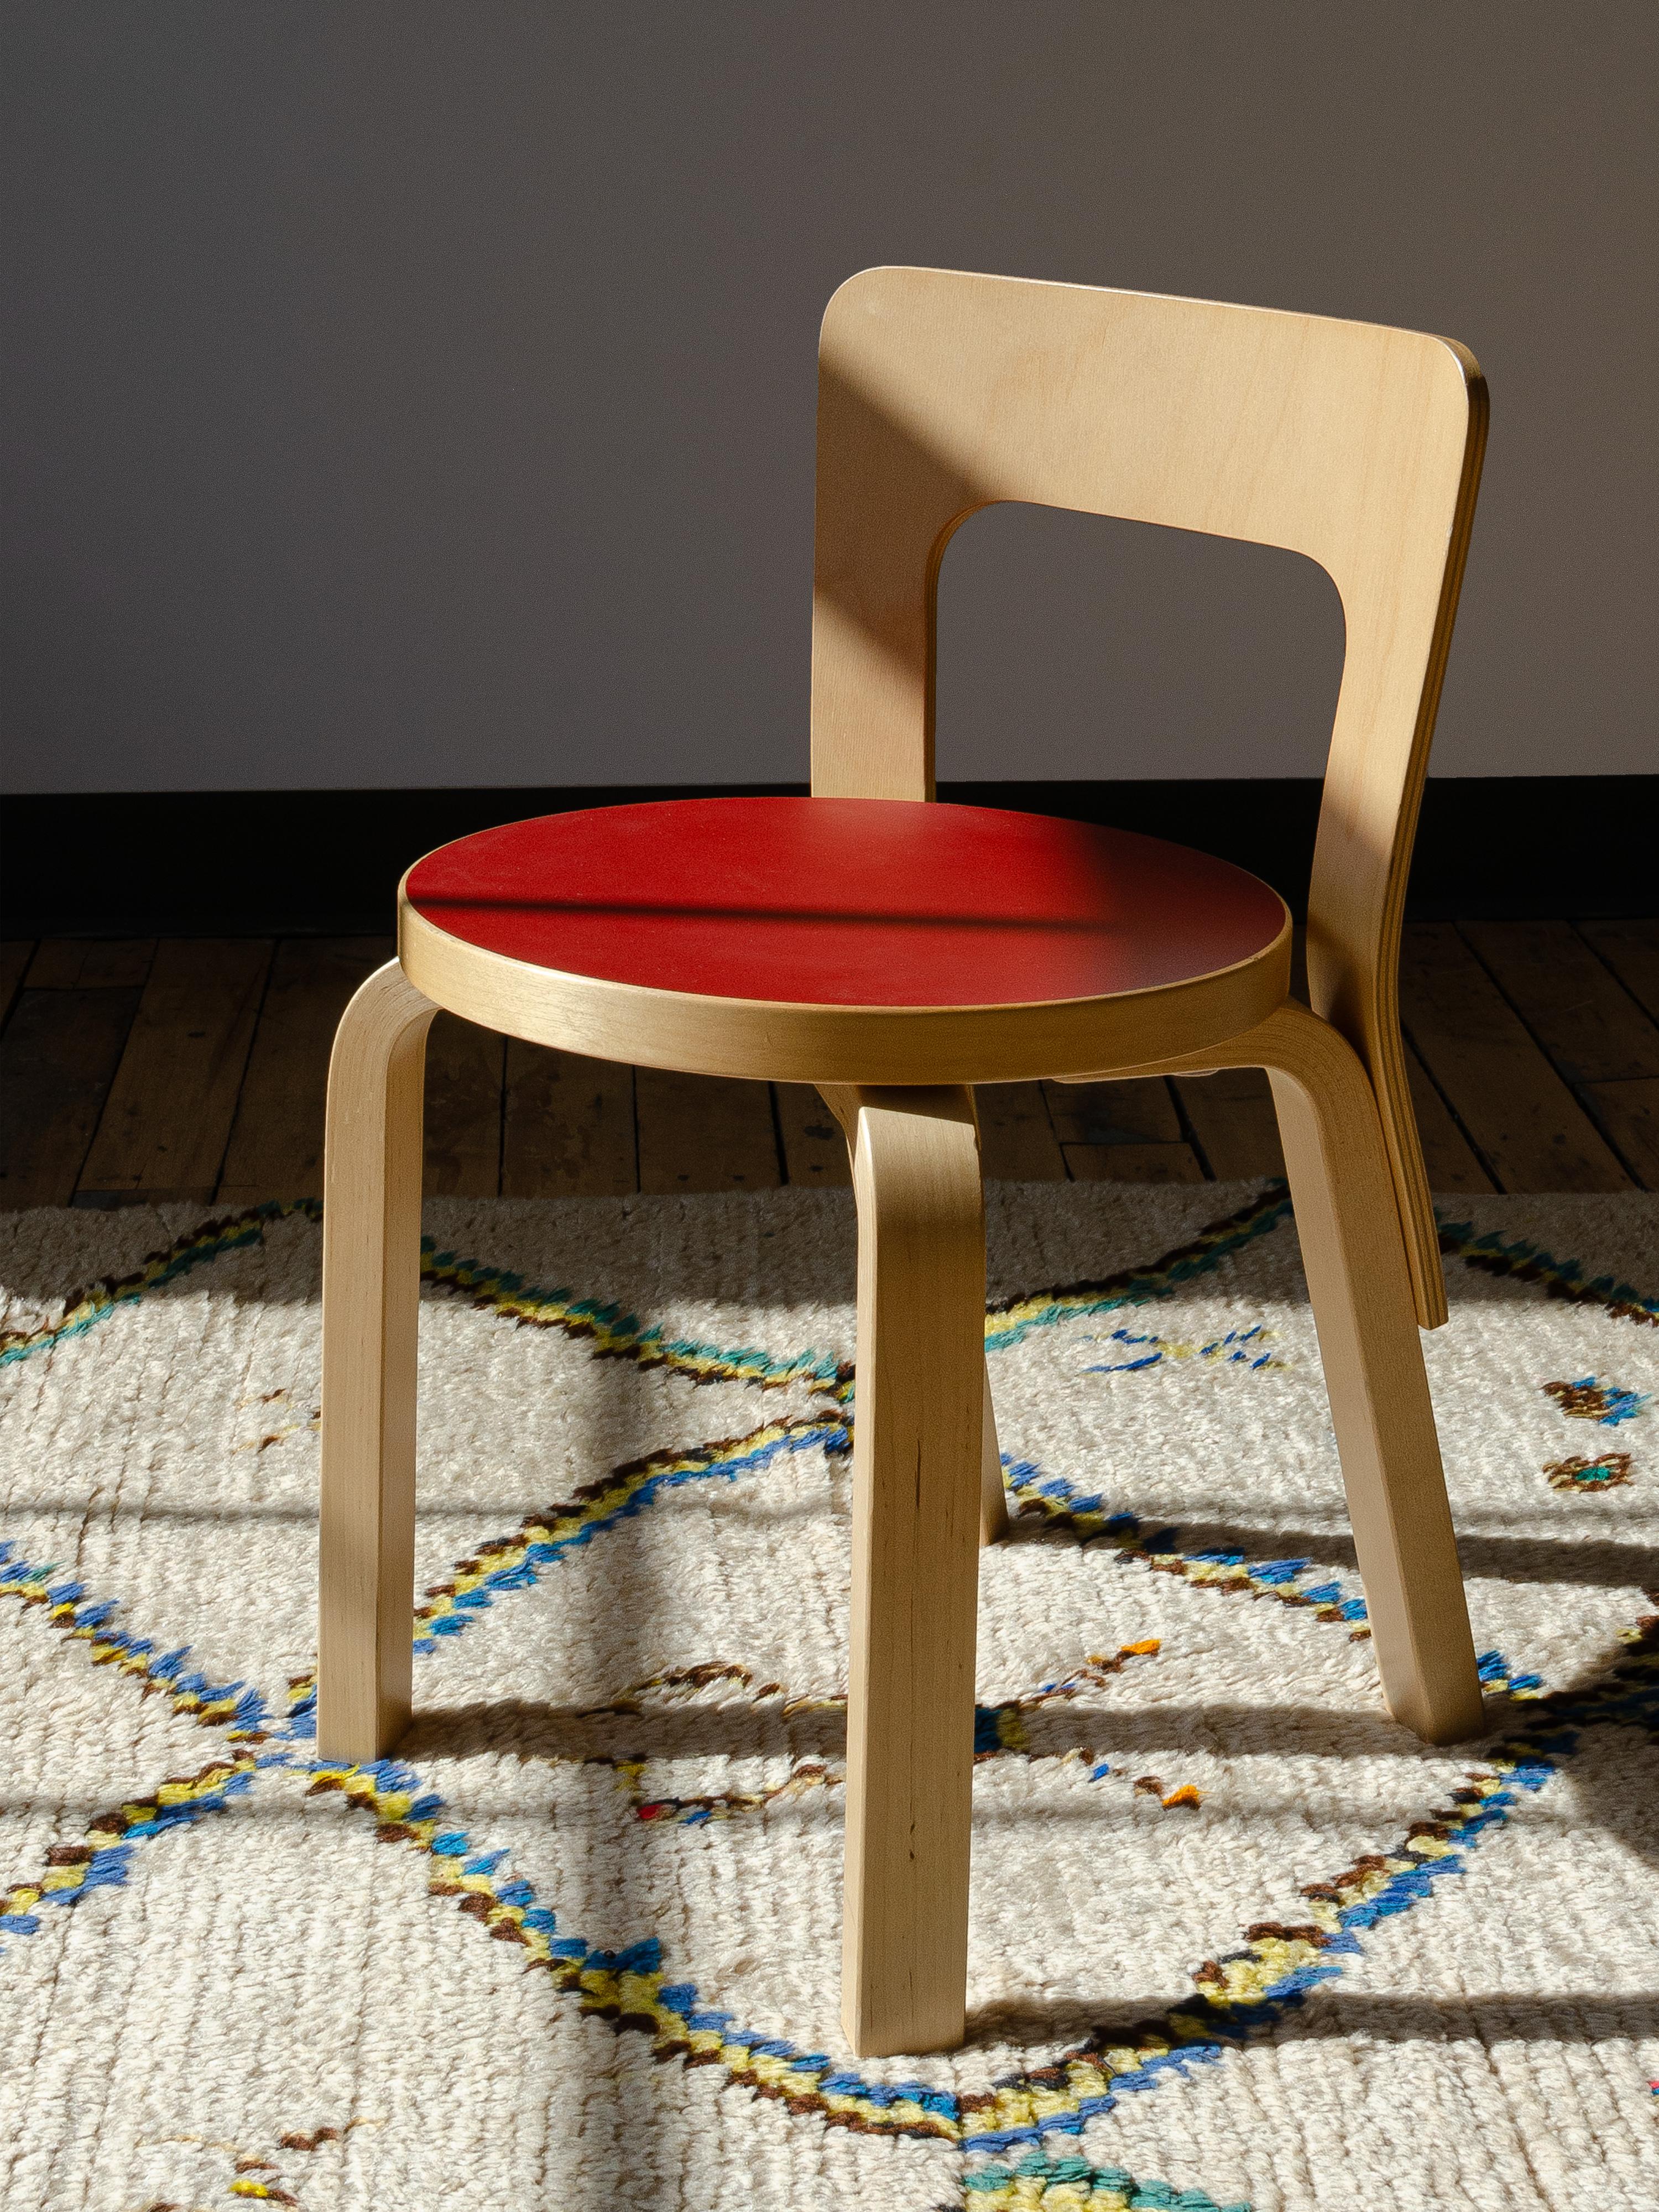 Der Kinderstuhl N65 von Artek ist ein leicht verkleinertes Modell des Stuhls 65, der 1935 von Alvar Aalto entworfen wurde. Im Jahr 2013 brachte Artek zu Ehren des 80-jährigen Jubiläums diese klassischen Möbelstücke für eine begrenzte Zeit heraus.